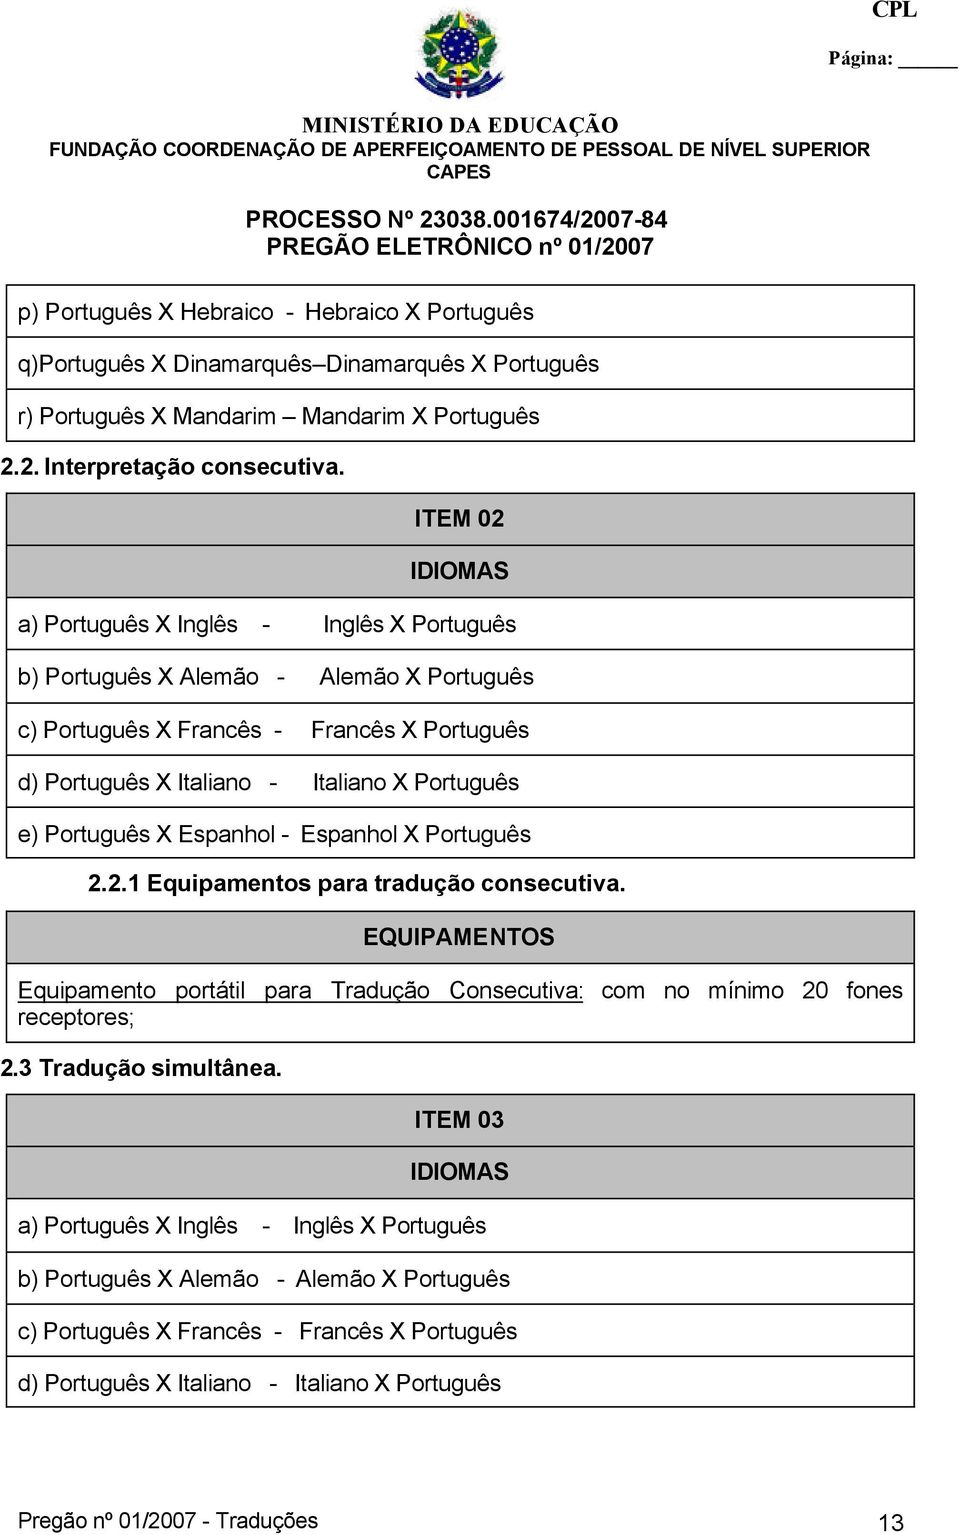 Português X Espanhol - Espanhol X Português 2.2.1 Equipamentos para tradução consecutiva. EQUIPAMENTOS Equipamento portátil para Tradução Consecutiva: com no mínimo 20 fones receptores; 2.